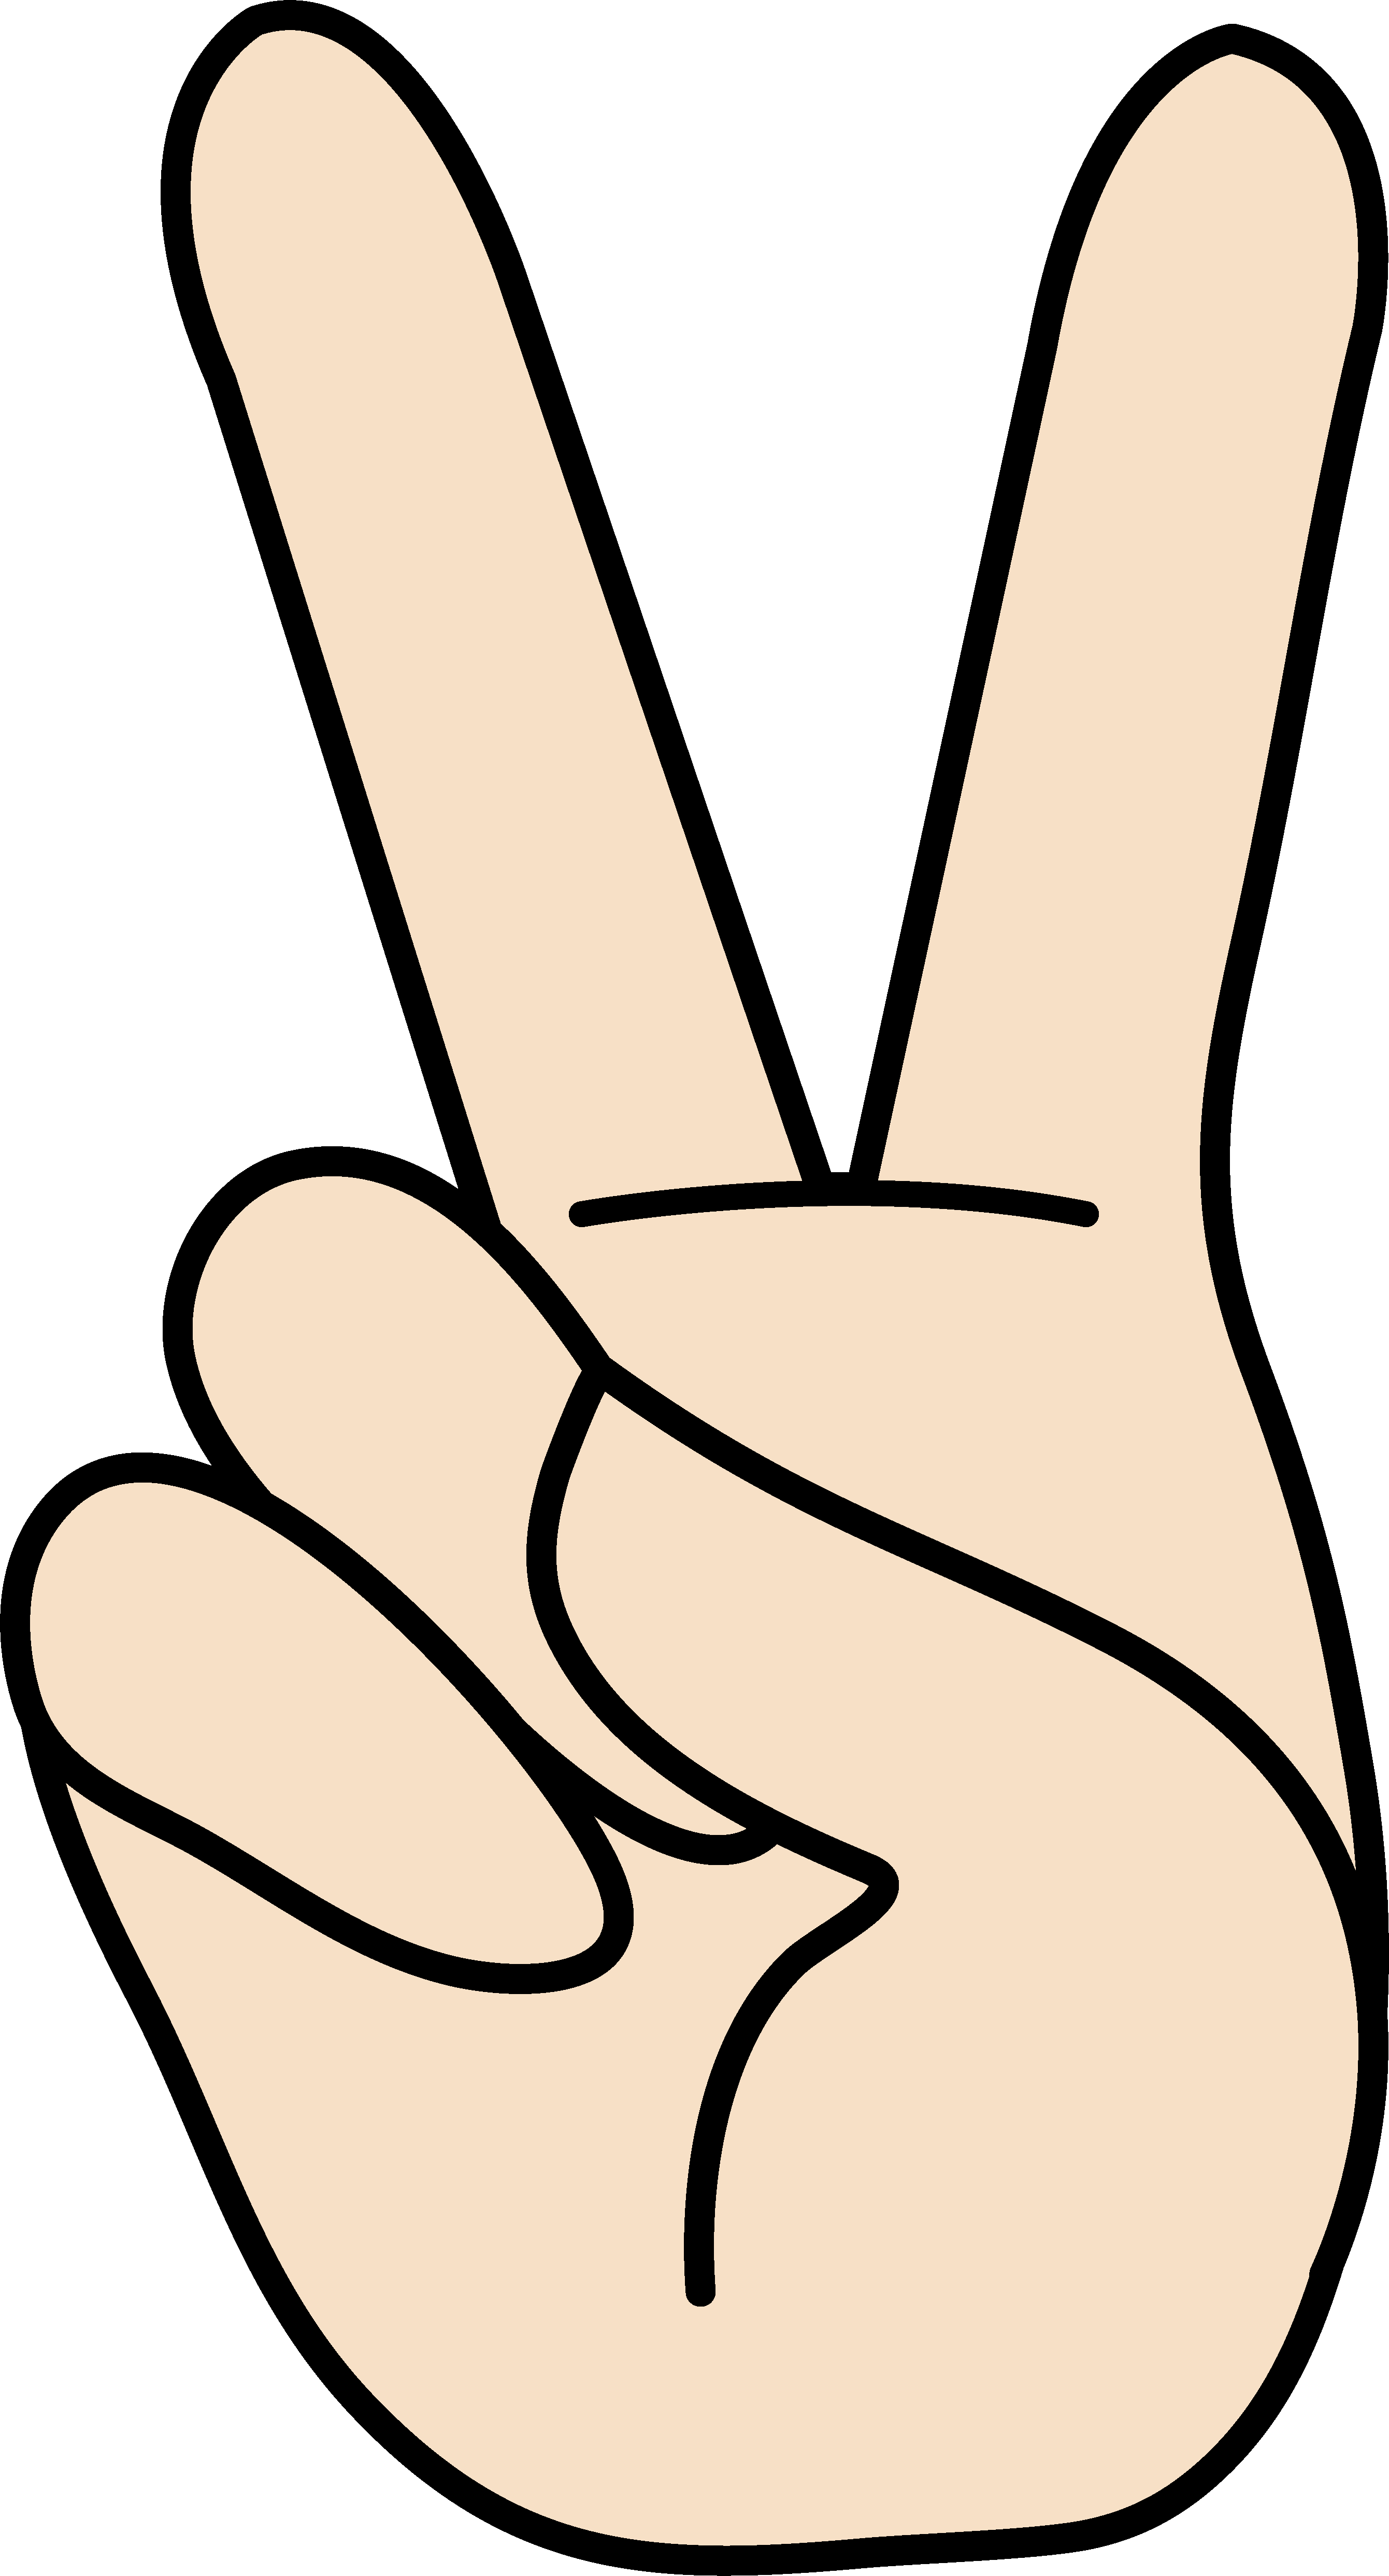 Peace Clipart - Cartoon Hand Peace Sign (2681x4971)